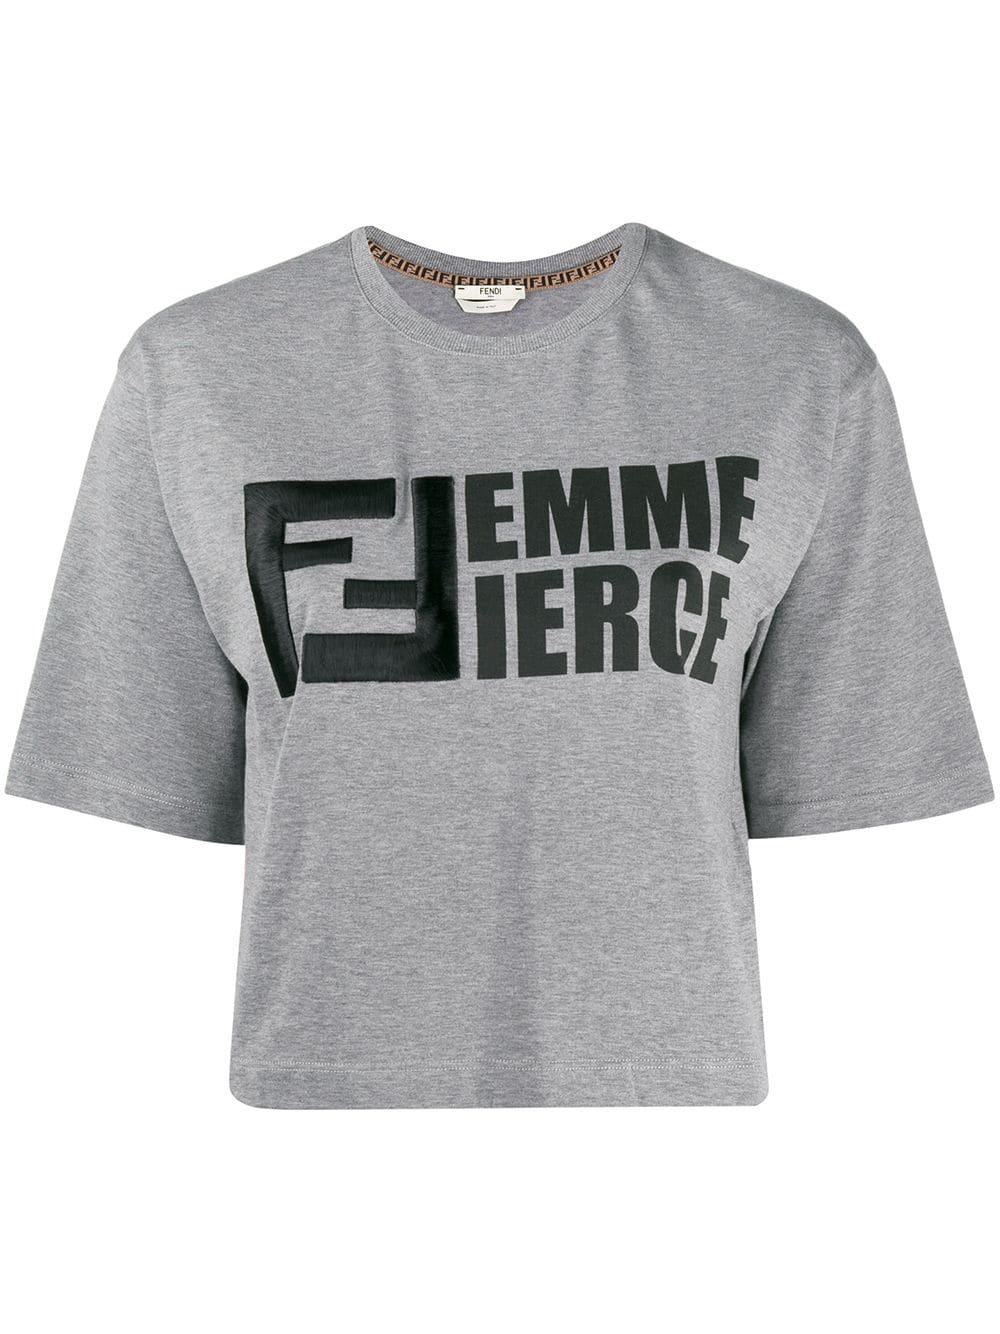 Fendi Cotton Femme Fierce T-shirt in Grey (Gray) | Lyst